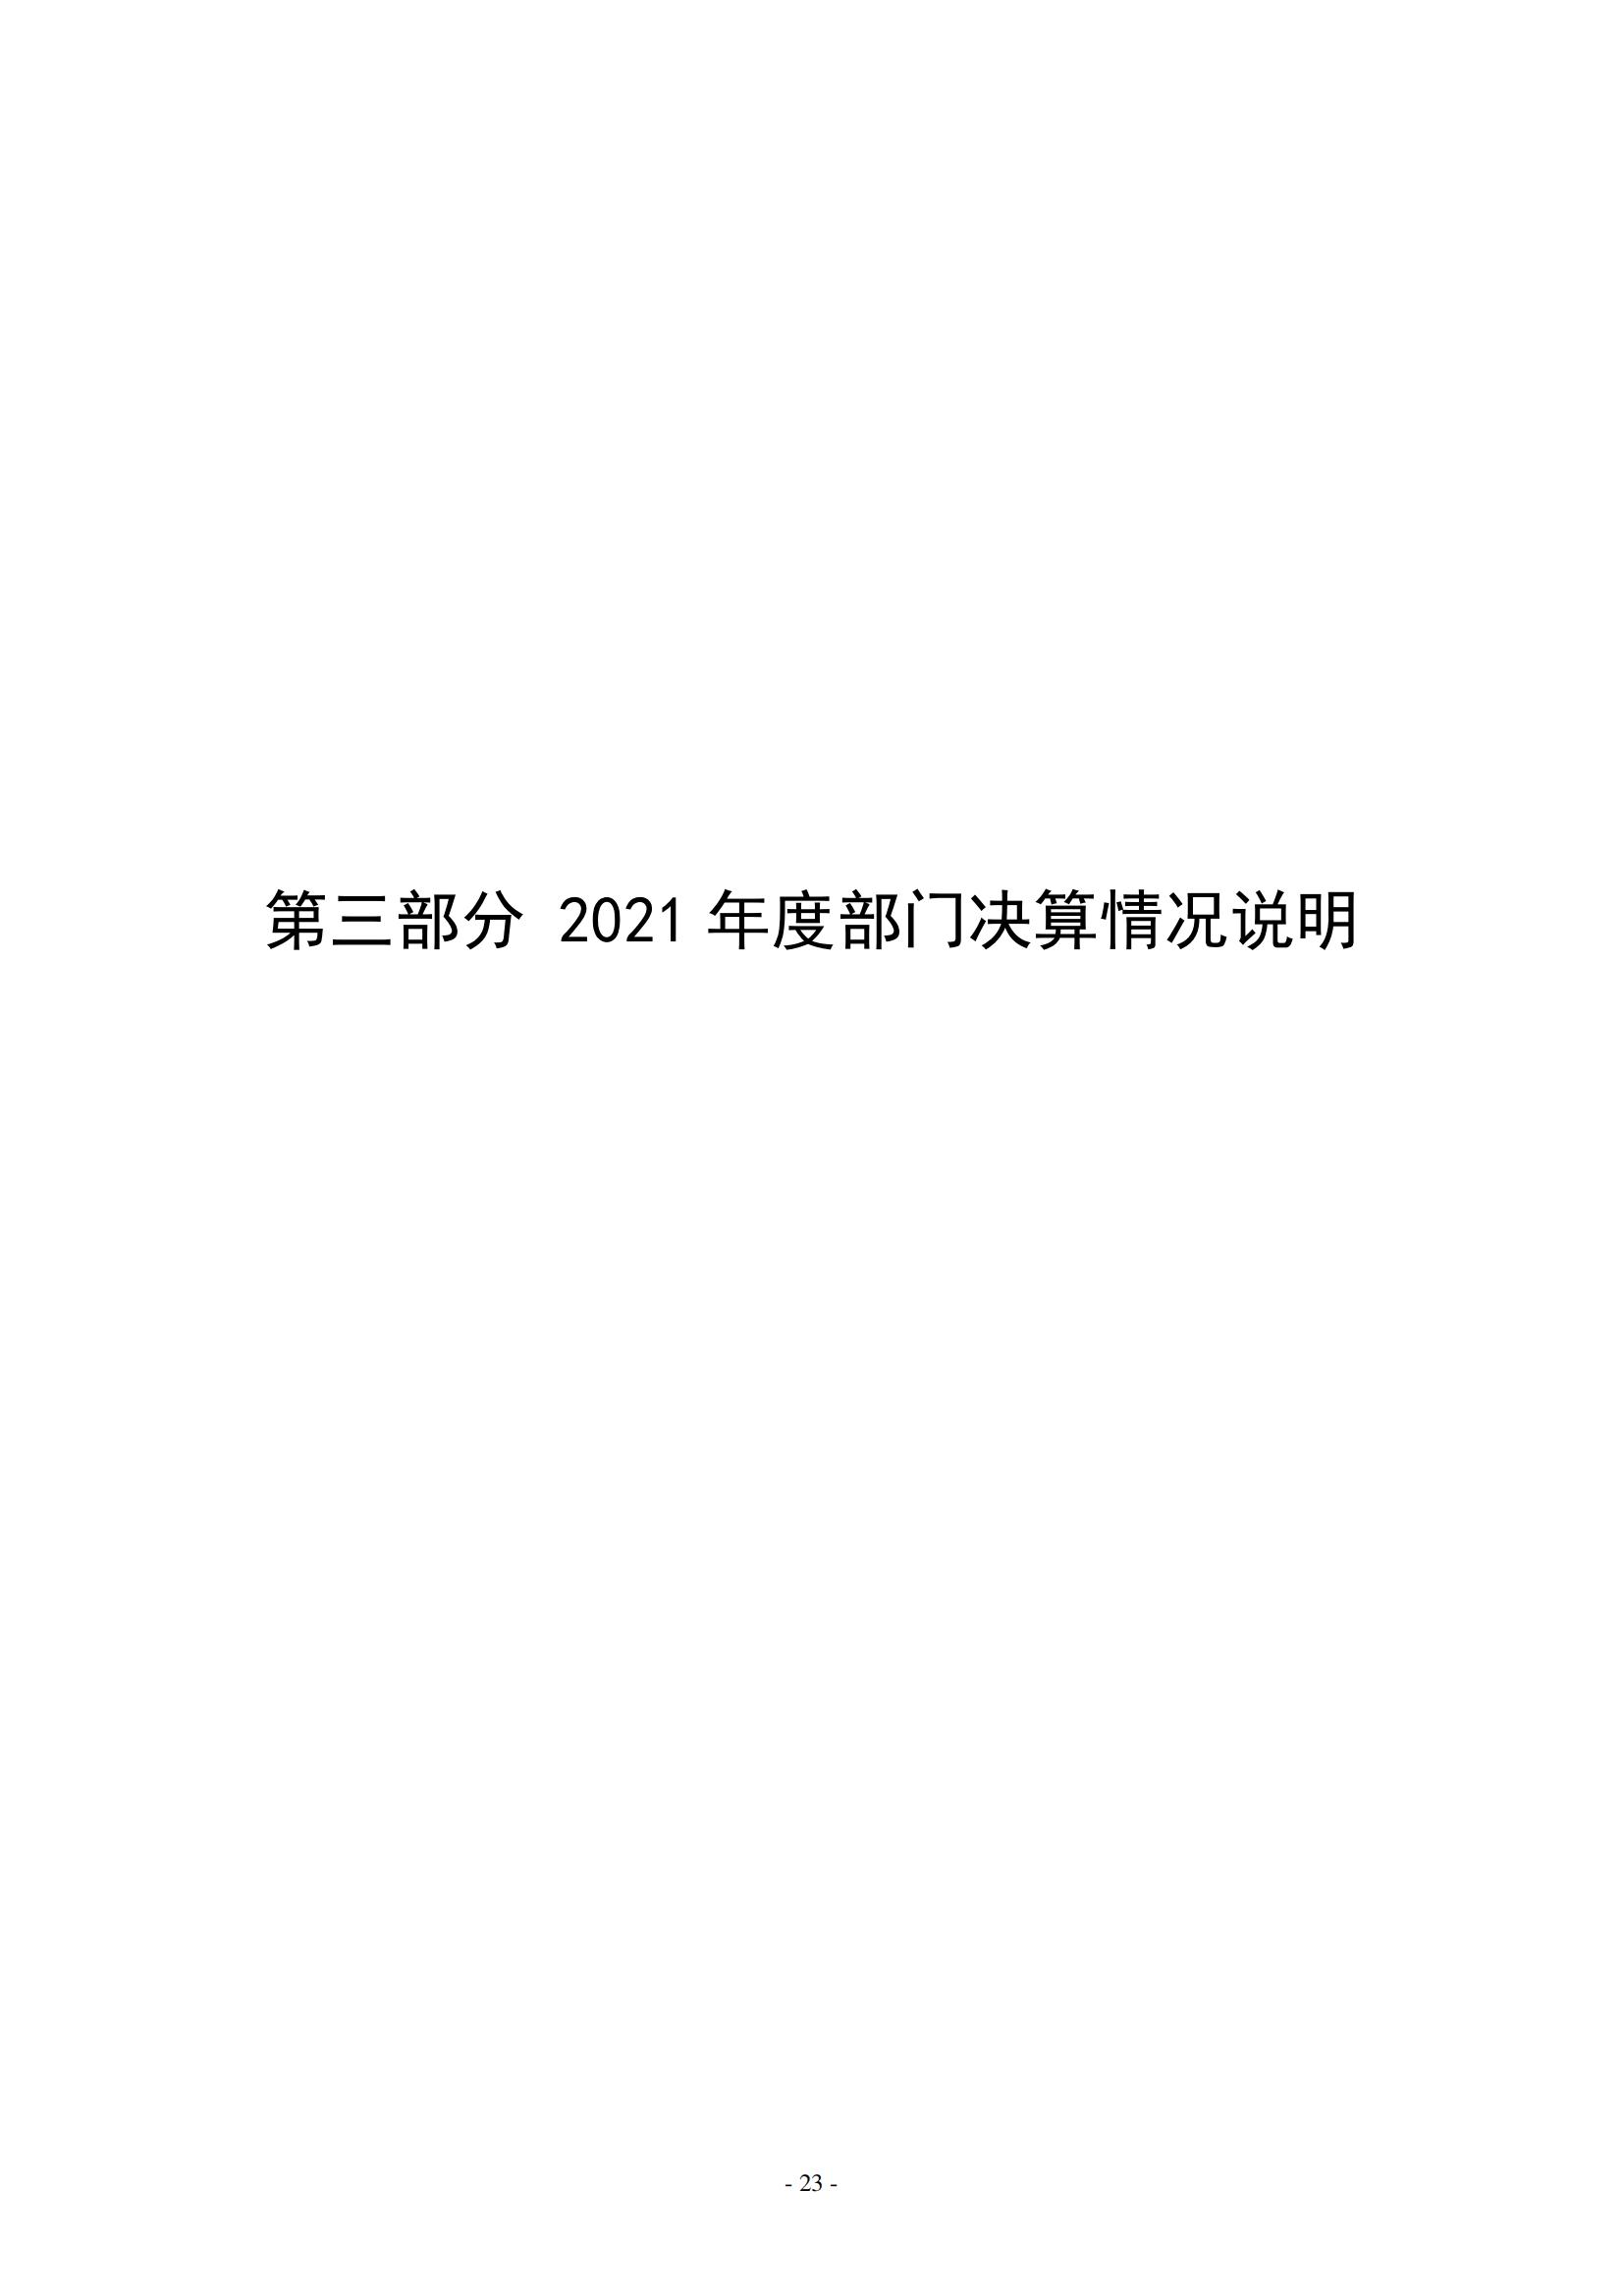 2021年度中共新乡市委老干部局(部门)决算公开说明_22